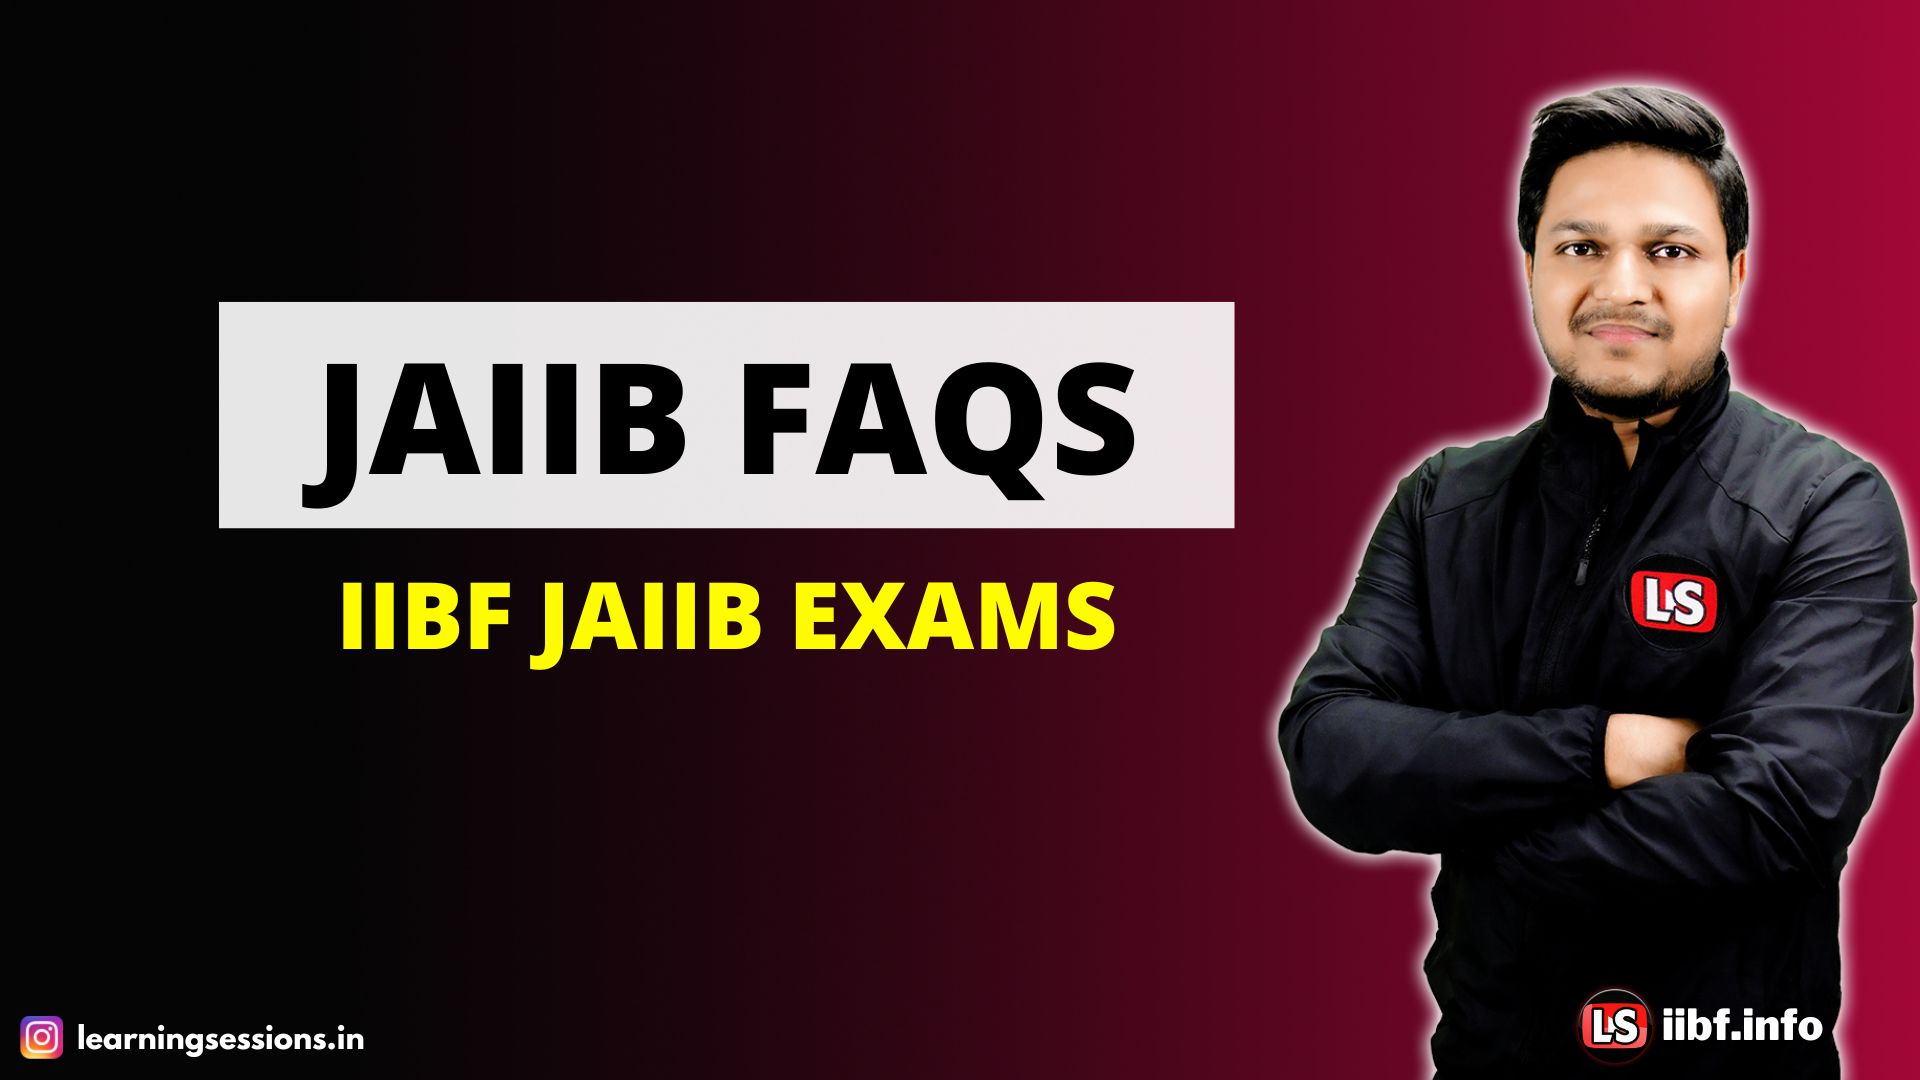 JAIIB FAQS | IIBF JAIIB EXAMS